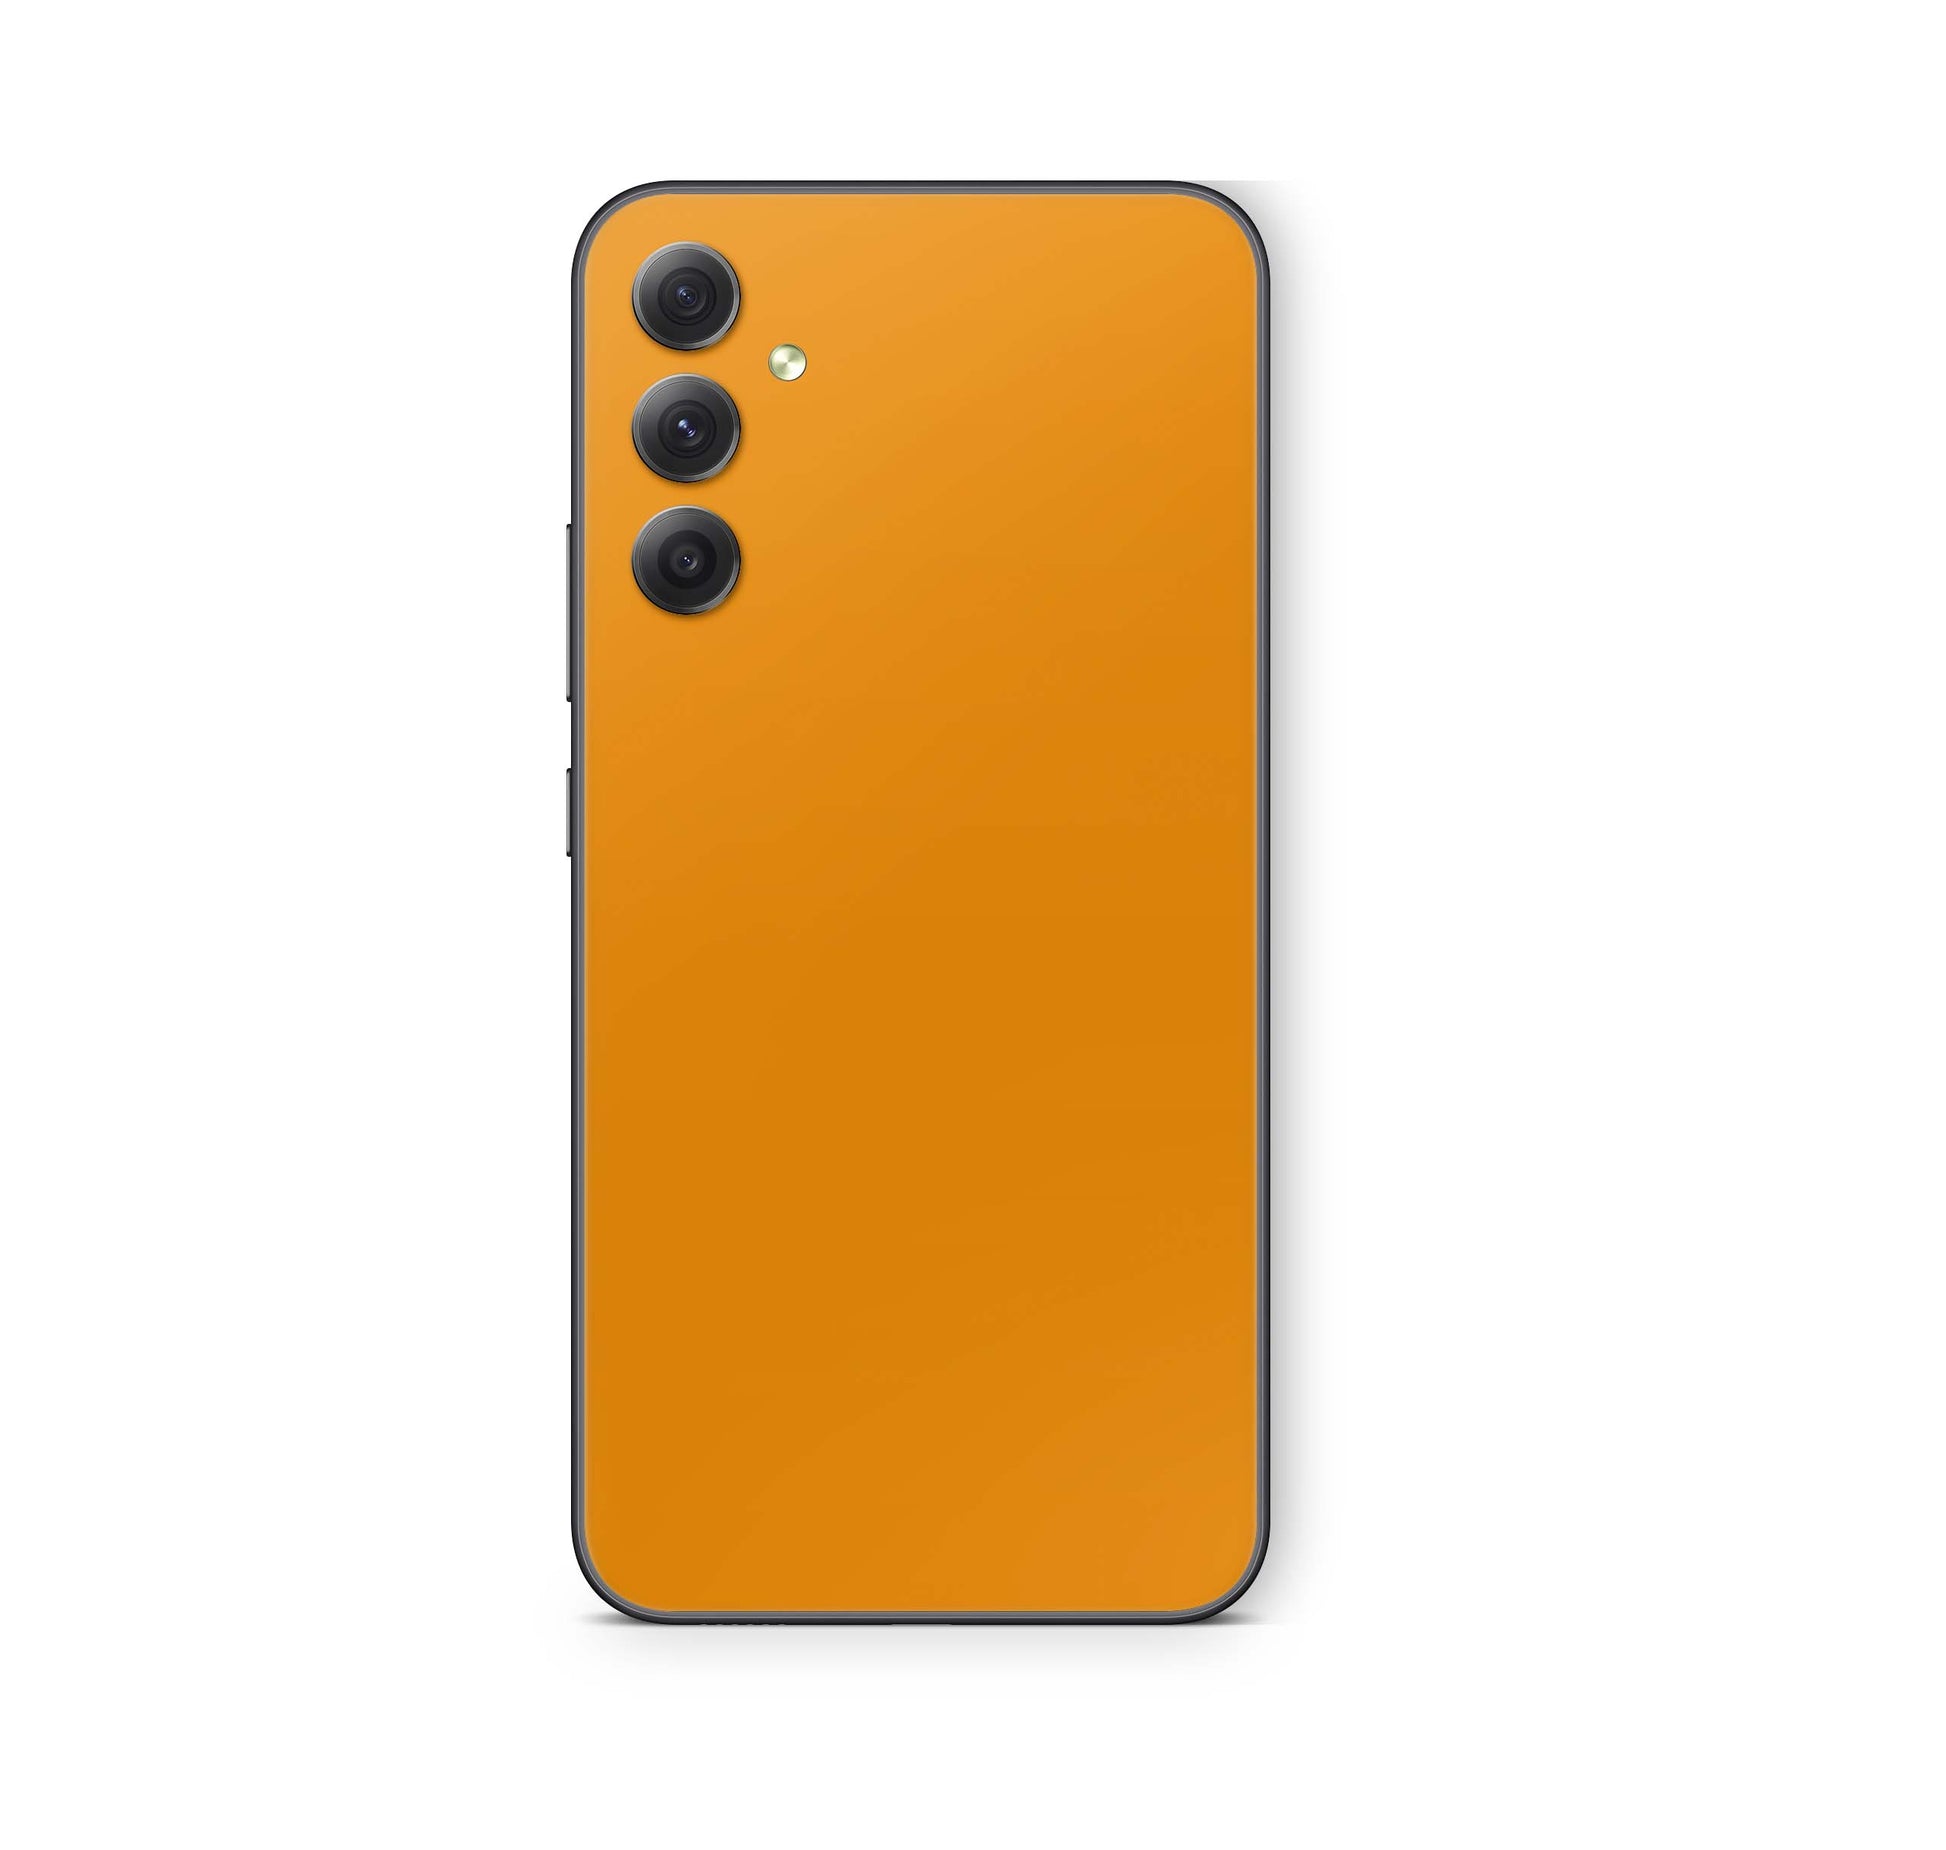 Samsung Galaxy S24 Skin Schutzfolie Aufkleber Skins Design Solid state orange Elektronik-Sticker & -Aufkleber skins4u   